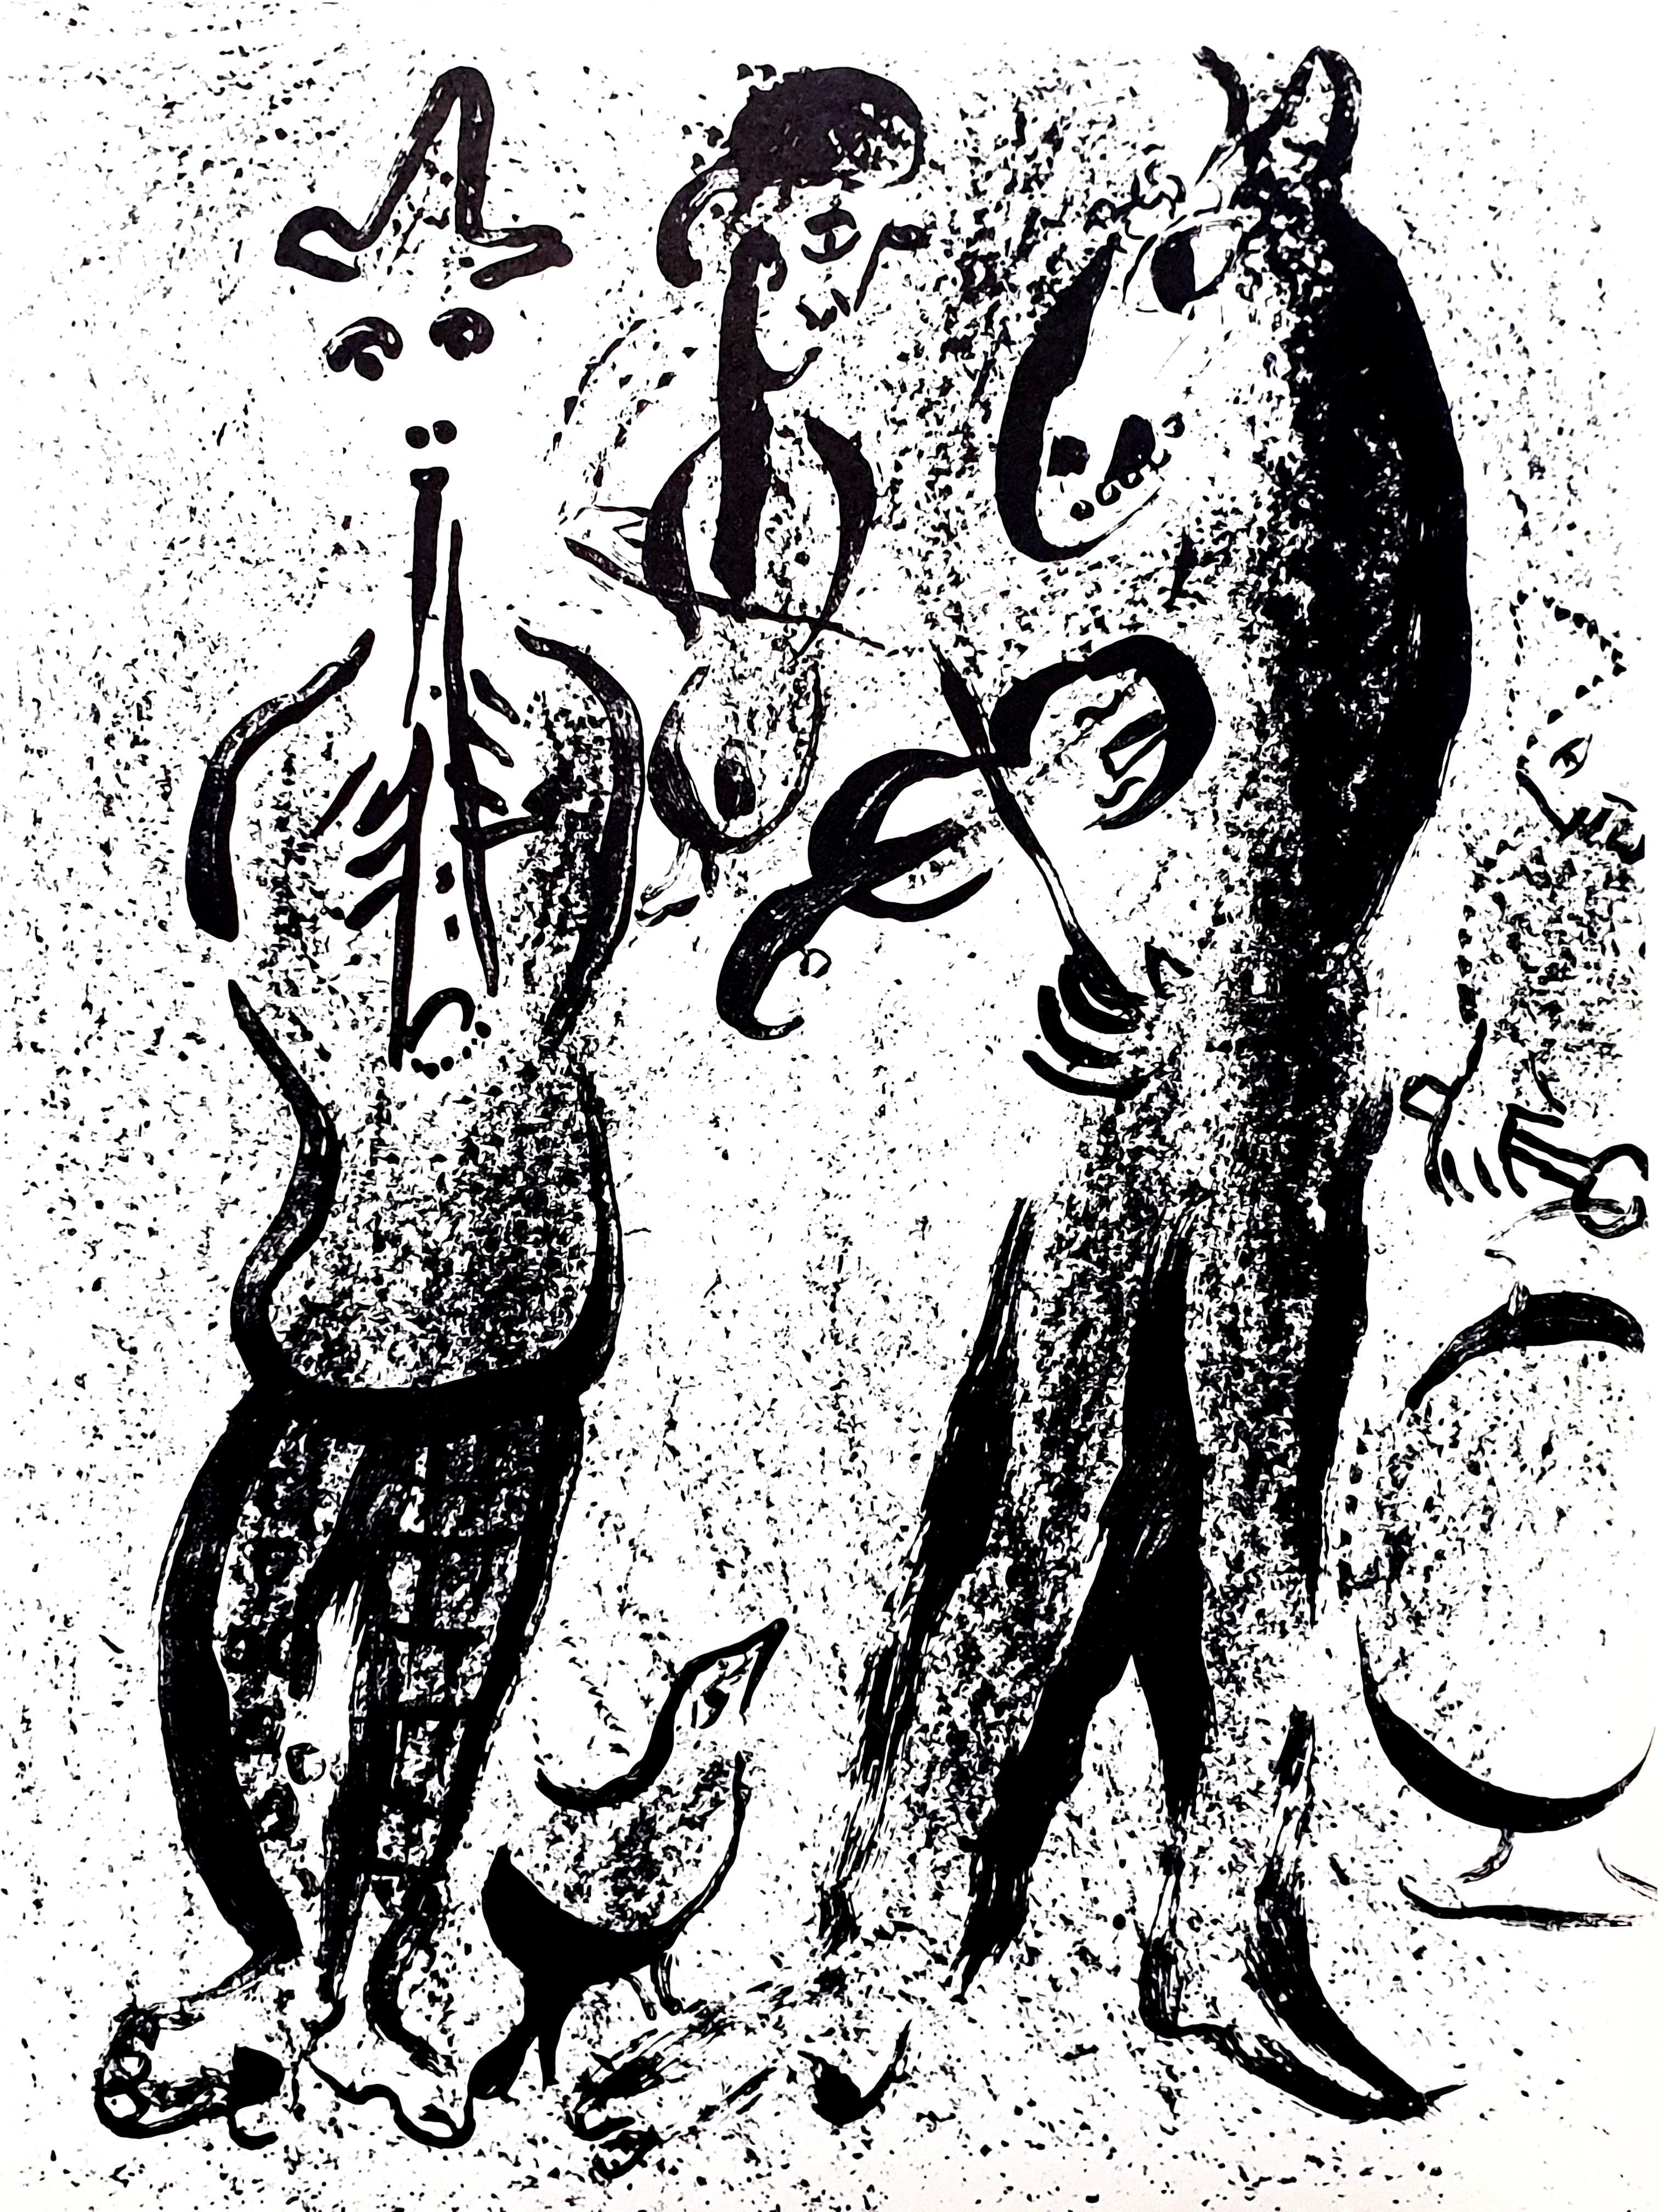 Marc Chagall
Original-Lithographie
1963
Abmessungen: 32 x 24 cm
Referenz: Chagall Lithographe 1957-1962. VOLUME II.
Unsignierte Auflage von über 5.000 Stück
Zustand: Ausgezeichnet

Marc Chagall  (geboren 1887)

Marc Chagall wurde 1887 in